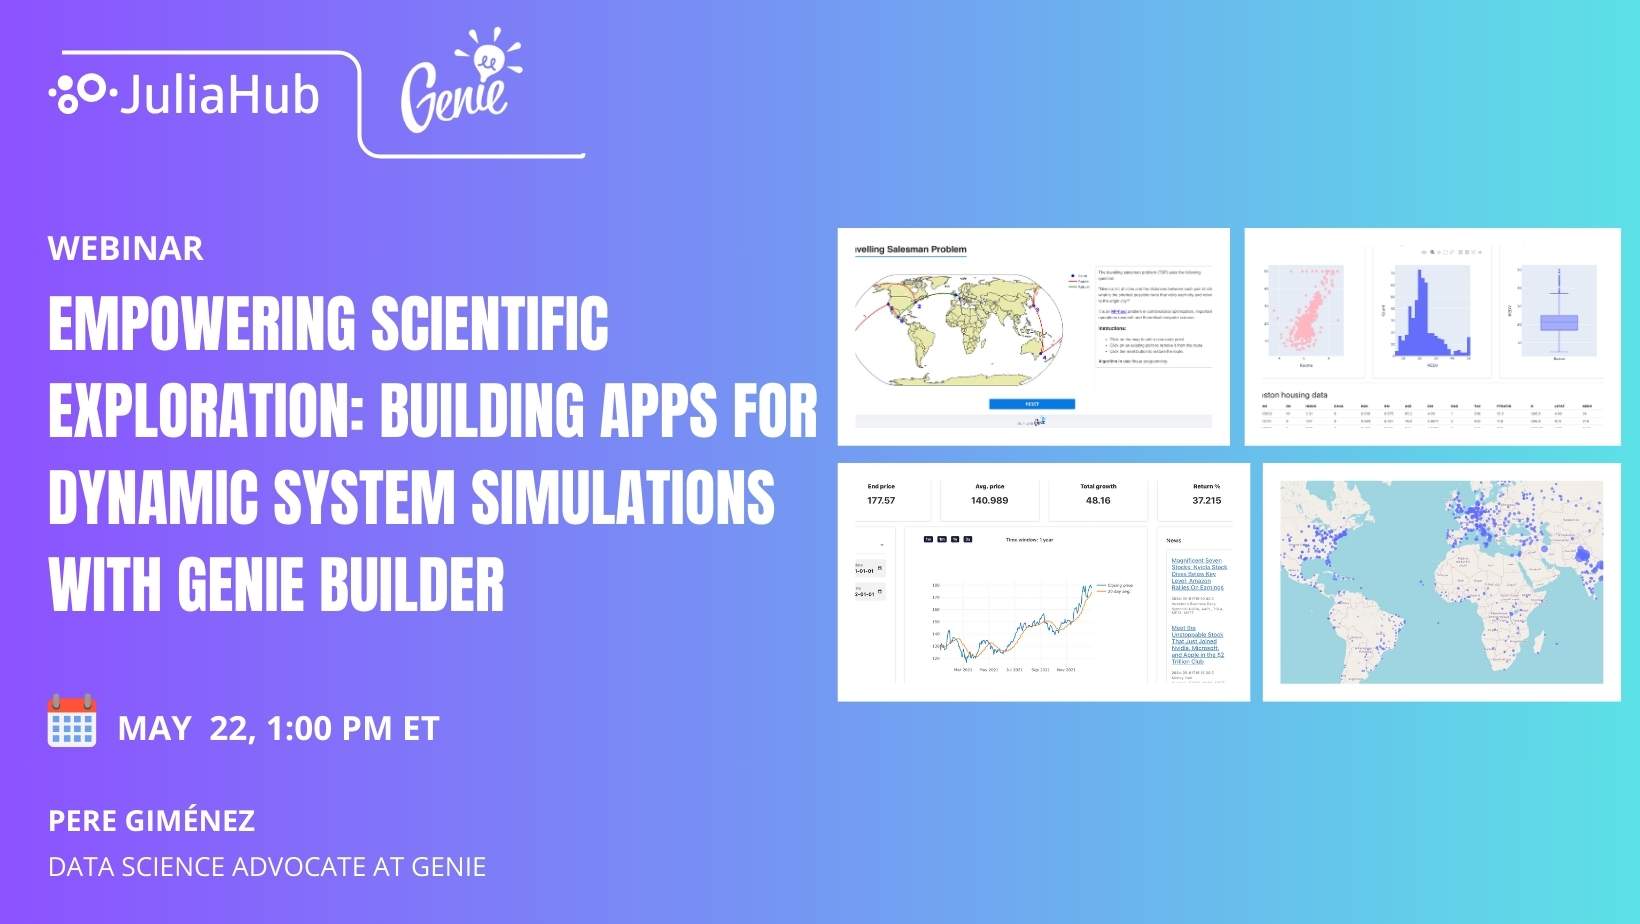 Genie Builder: Create dynamic system simulations